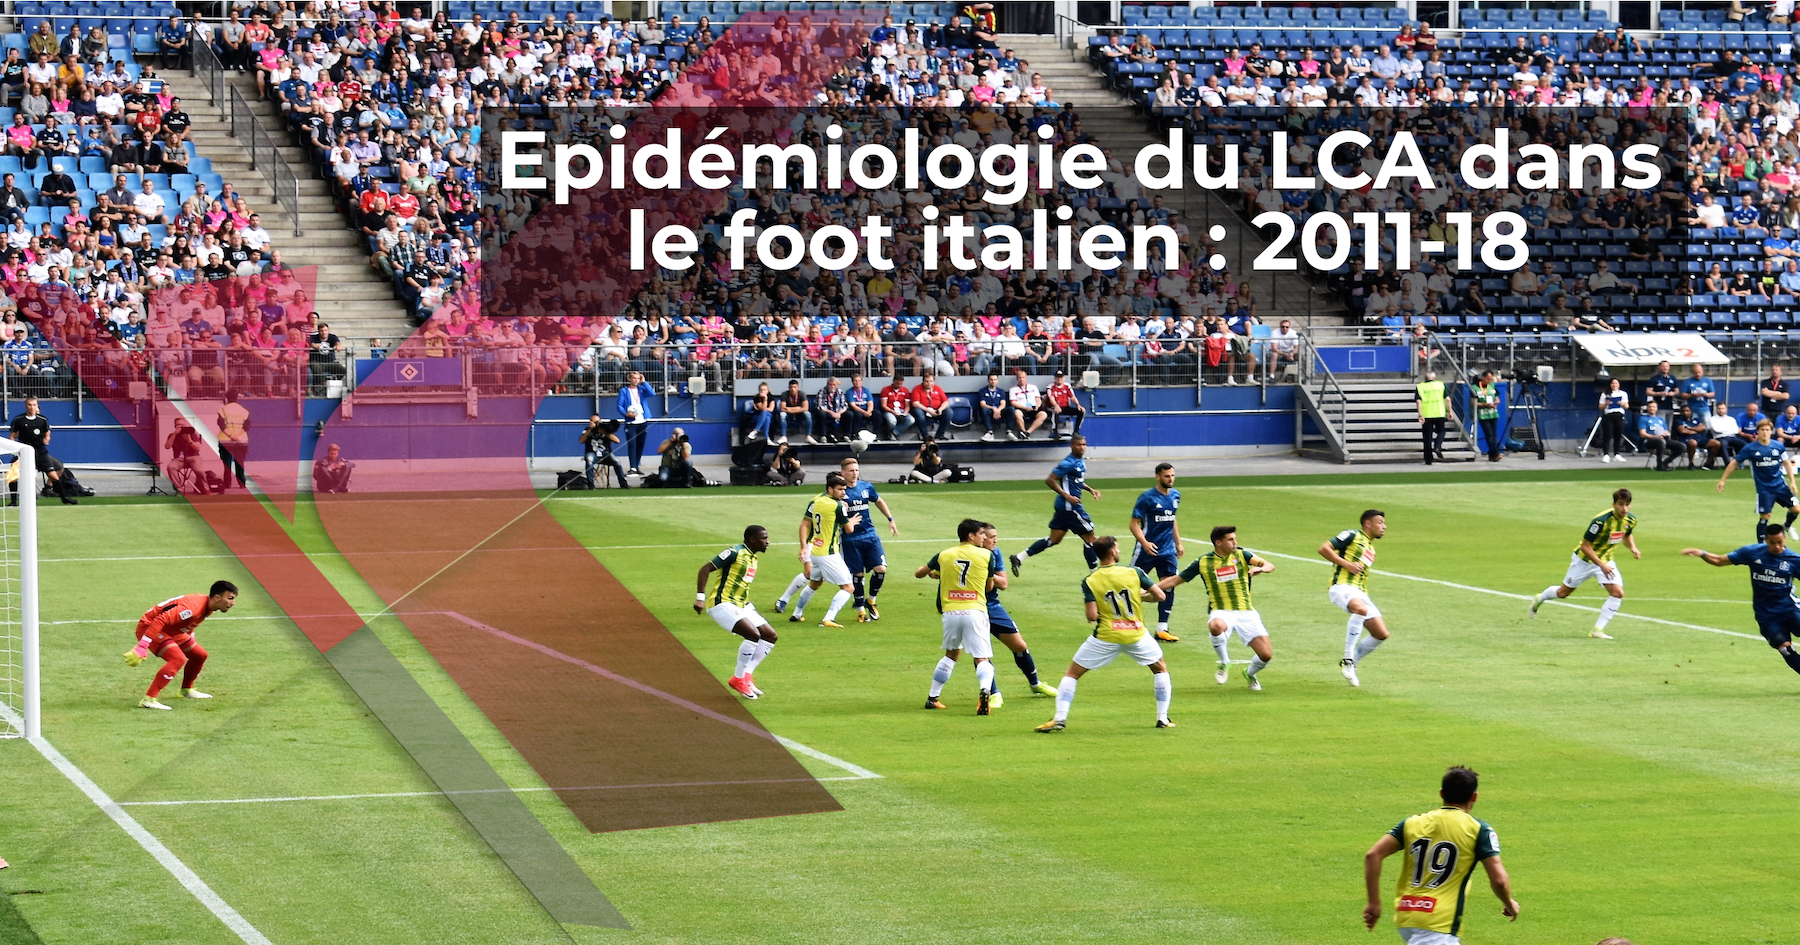 Epidémiologie du LCA dans le foot italien : 2011-18